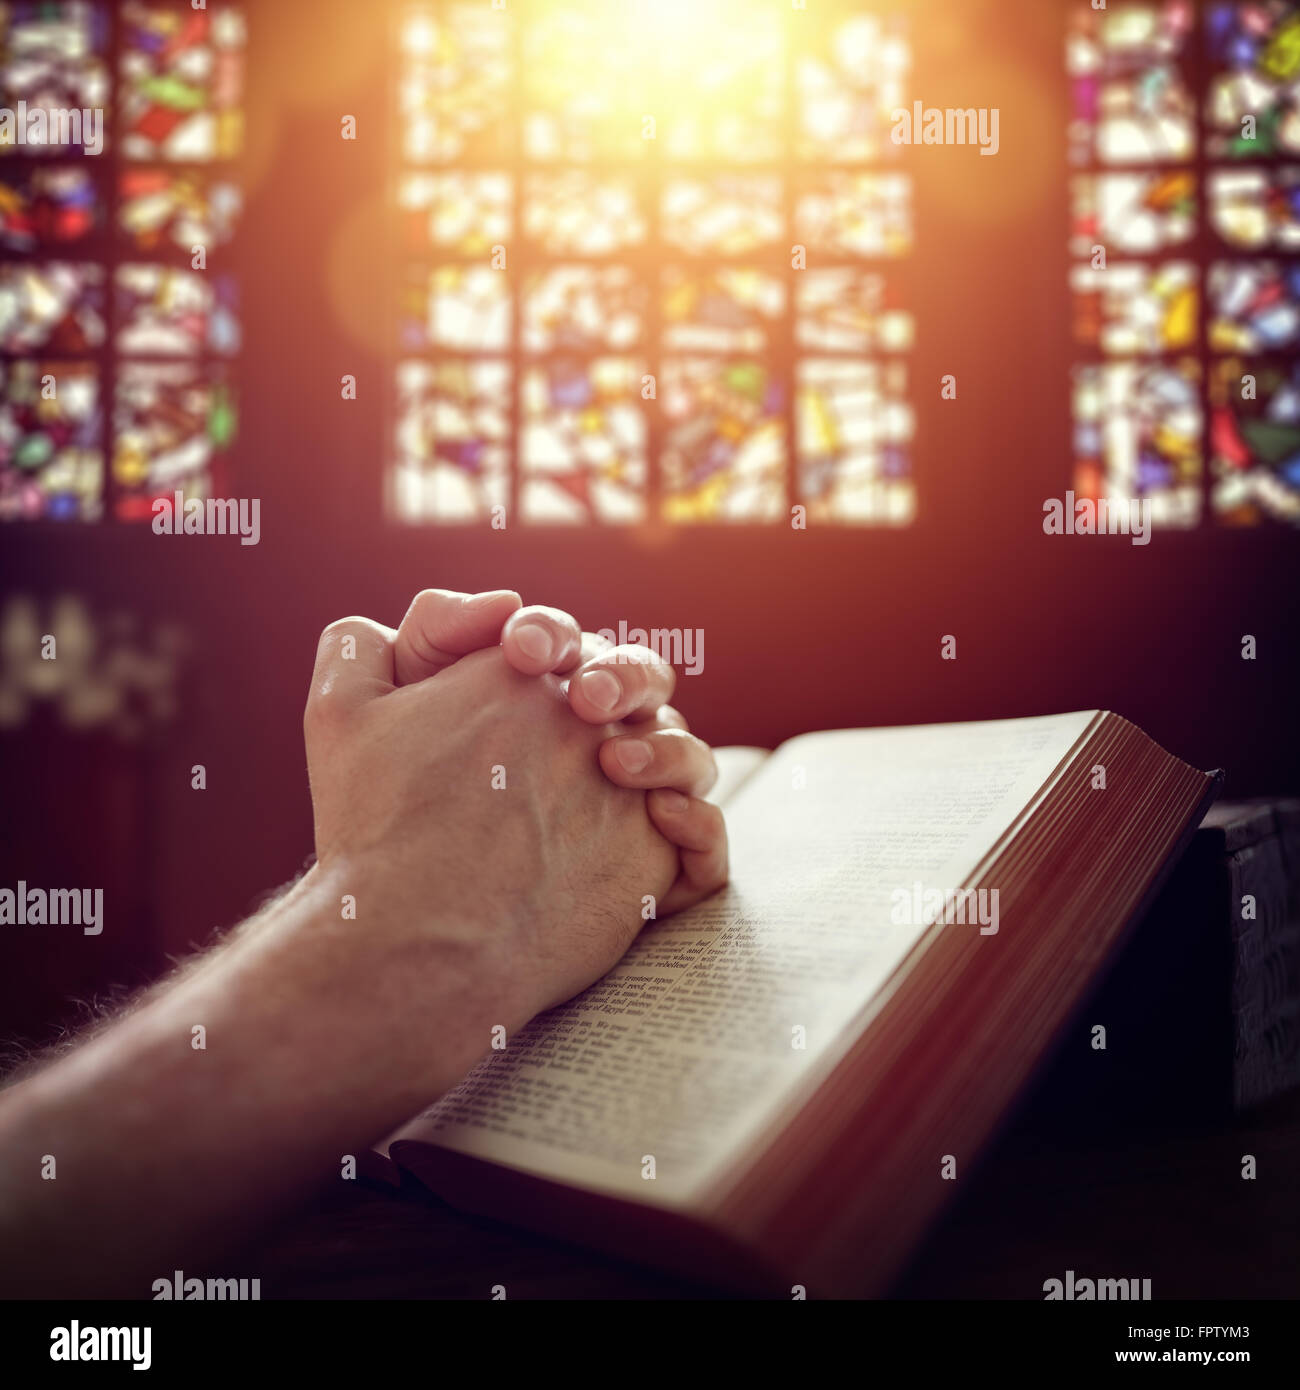 Mains jointes en prière sur une Bible dans une église Banque D'Images